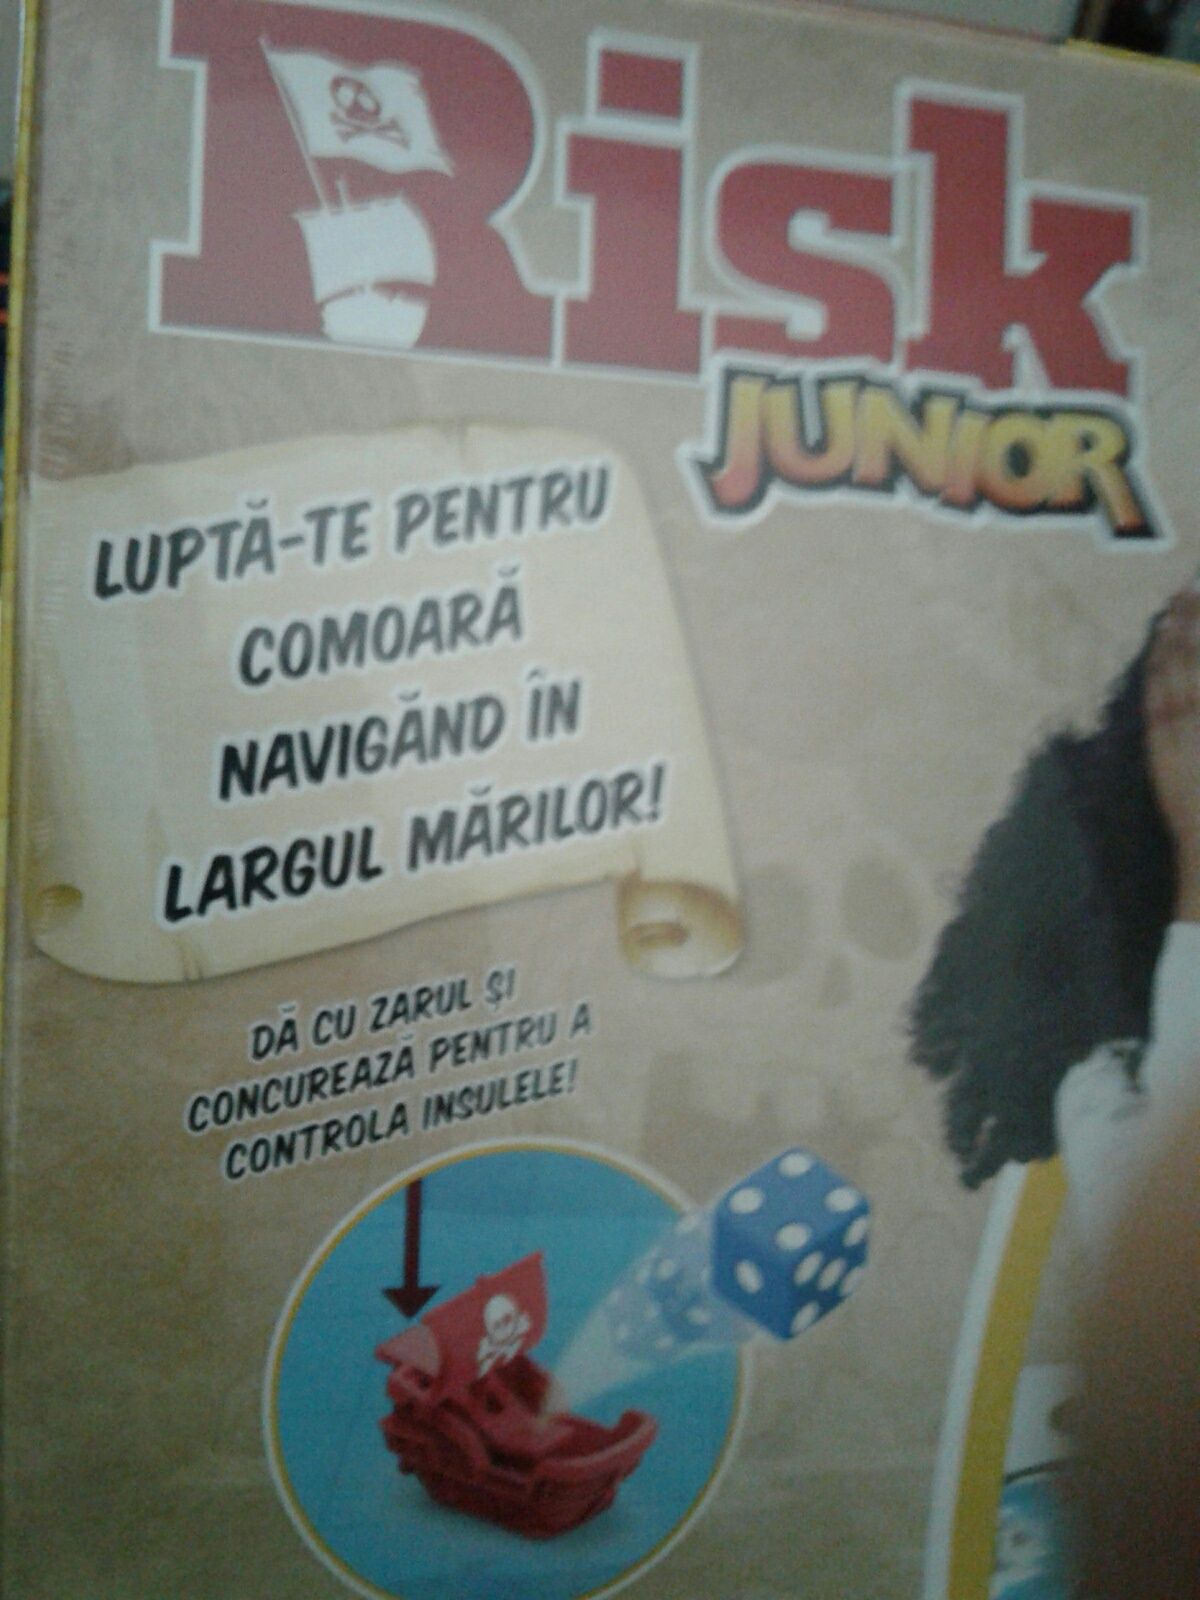 Risk Junior - Lupta pe mare, primul meu joc Risk original Hasbro, nou